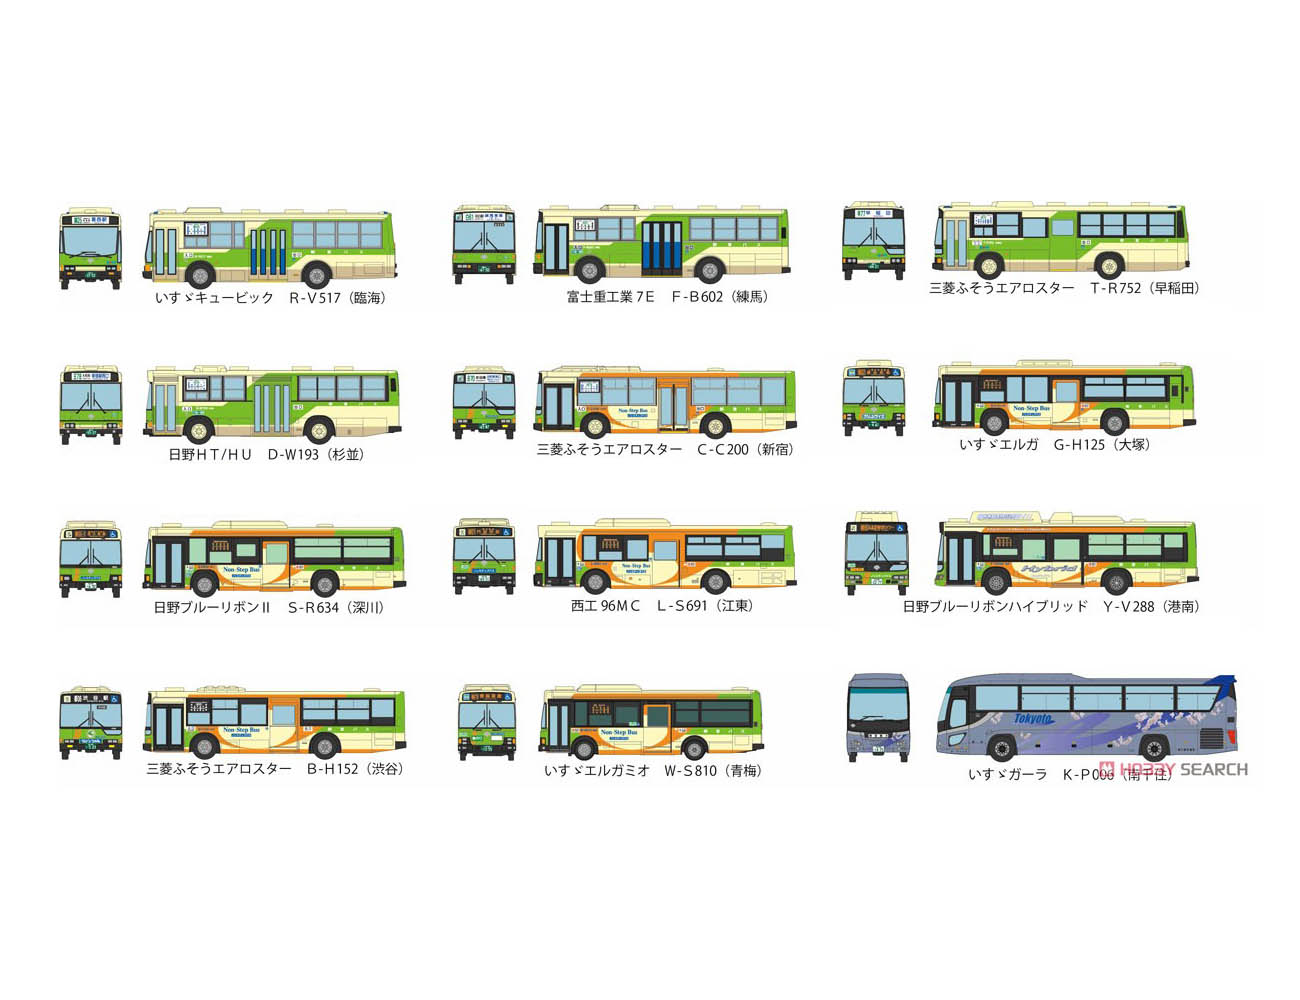 ザ・バスコレクション『都バススペシャル』12個入りBOX-001